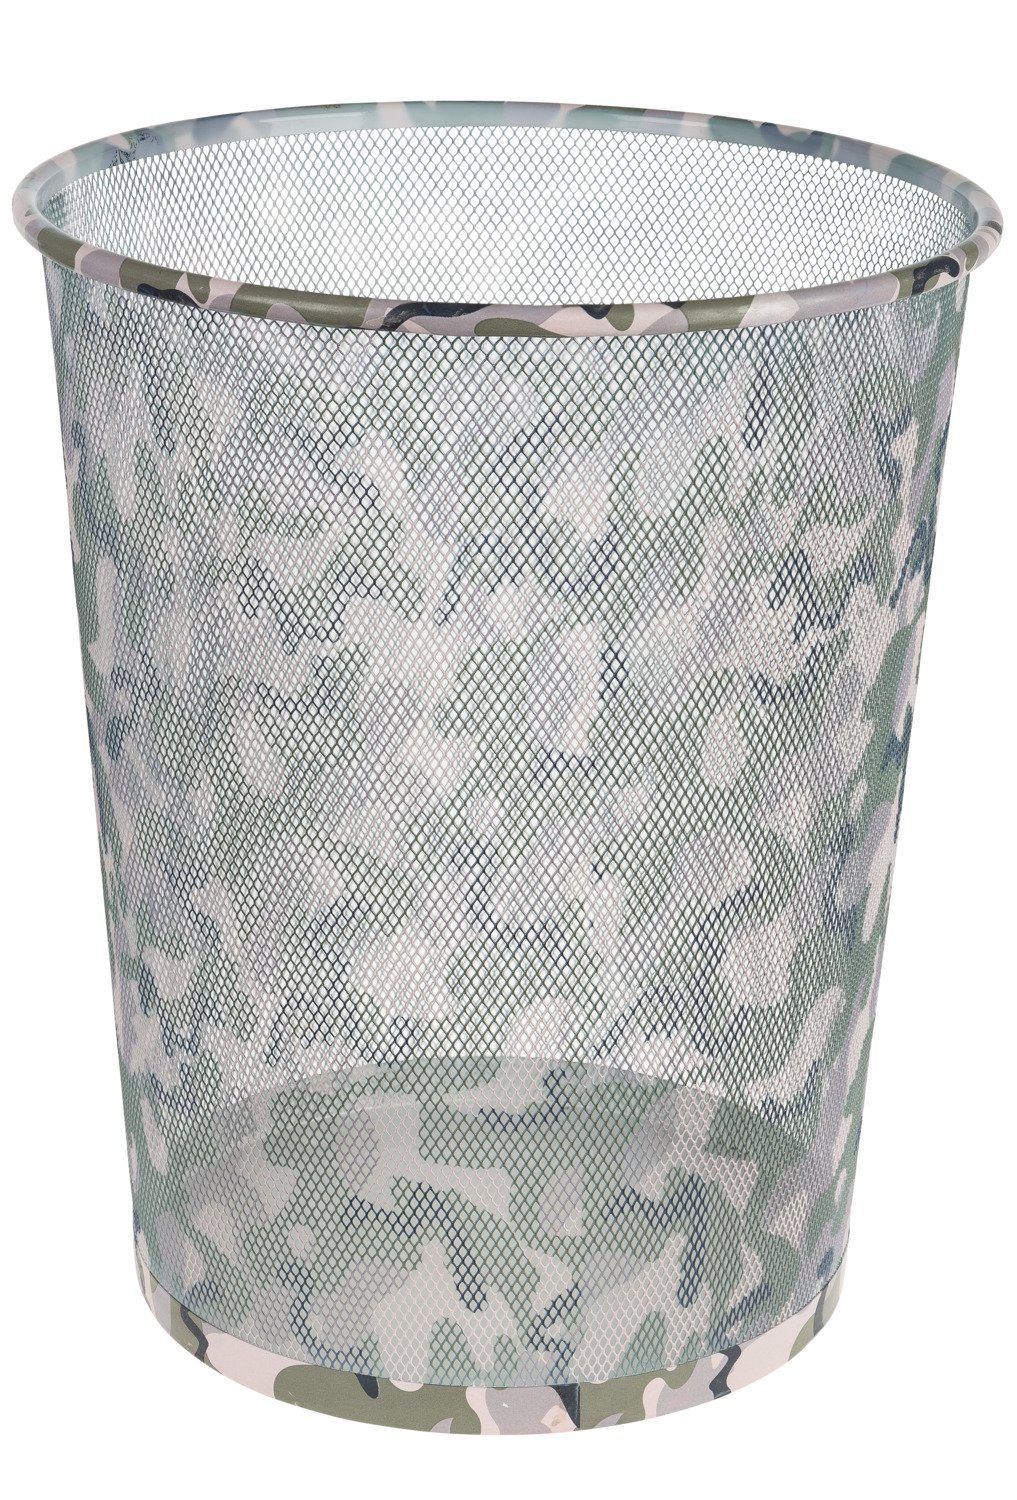 Idena Mülleimer Idena Papierkorb Metall Camouflage,ca. 17,7 Liter